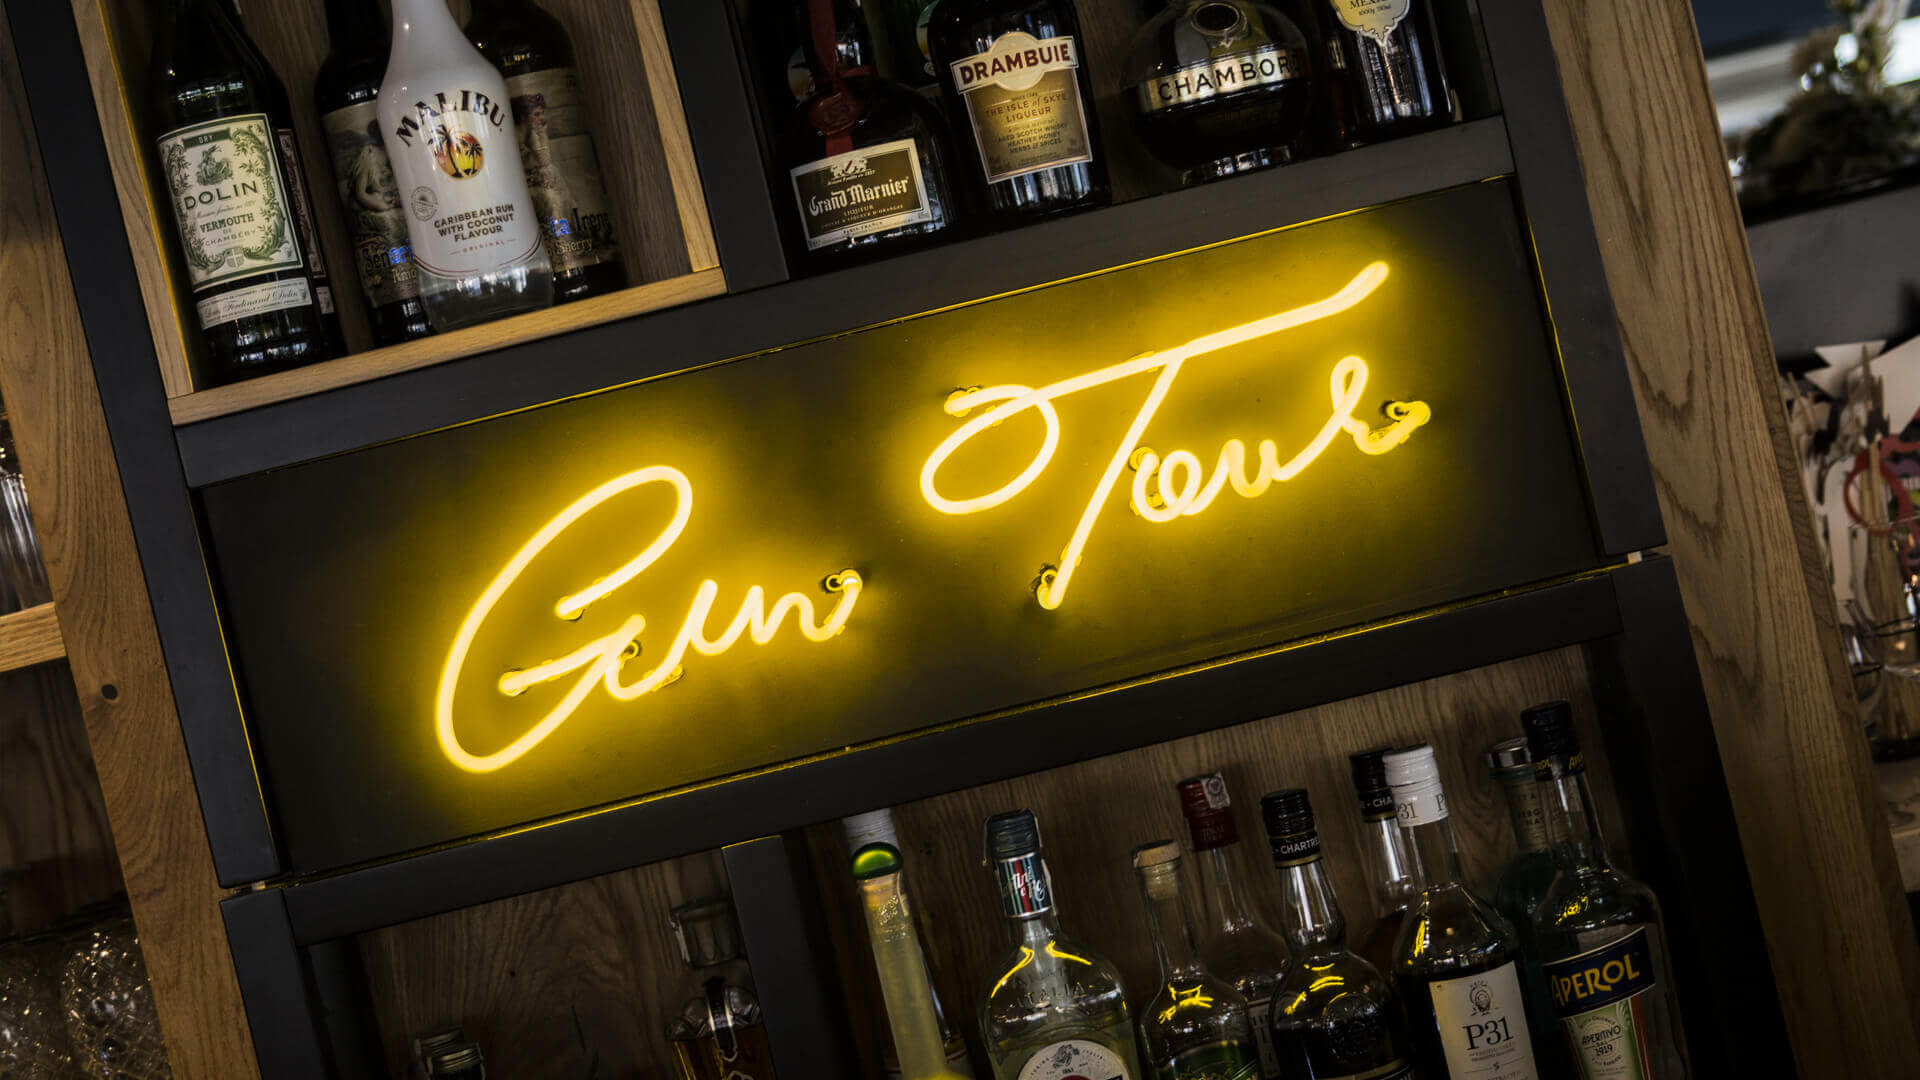 Gintur Gin tour - Gin-tour-néon-derrière-le-bar-dans-le-restaurant-néon-sur-le-mur-sous-lumière-des-verres-blancs-néon-compagnie-logo-néon-sur-la-pologne-entre-les-bouteilles-szafarnia10-gdansk (21) 